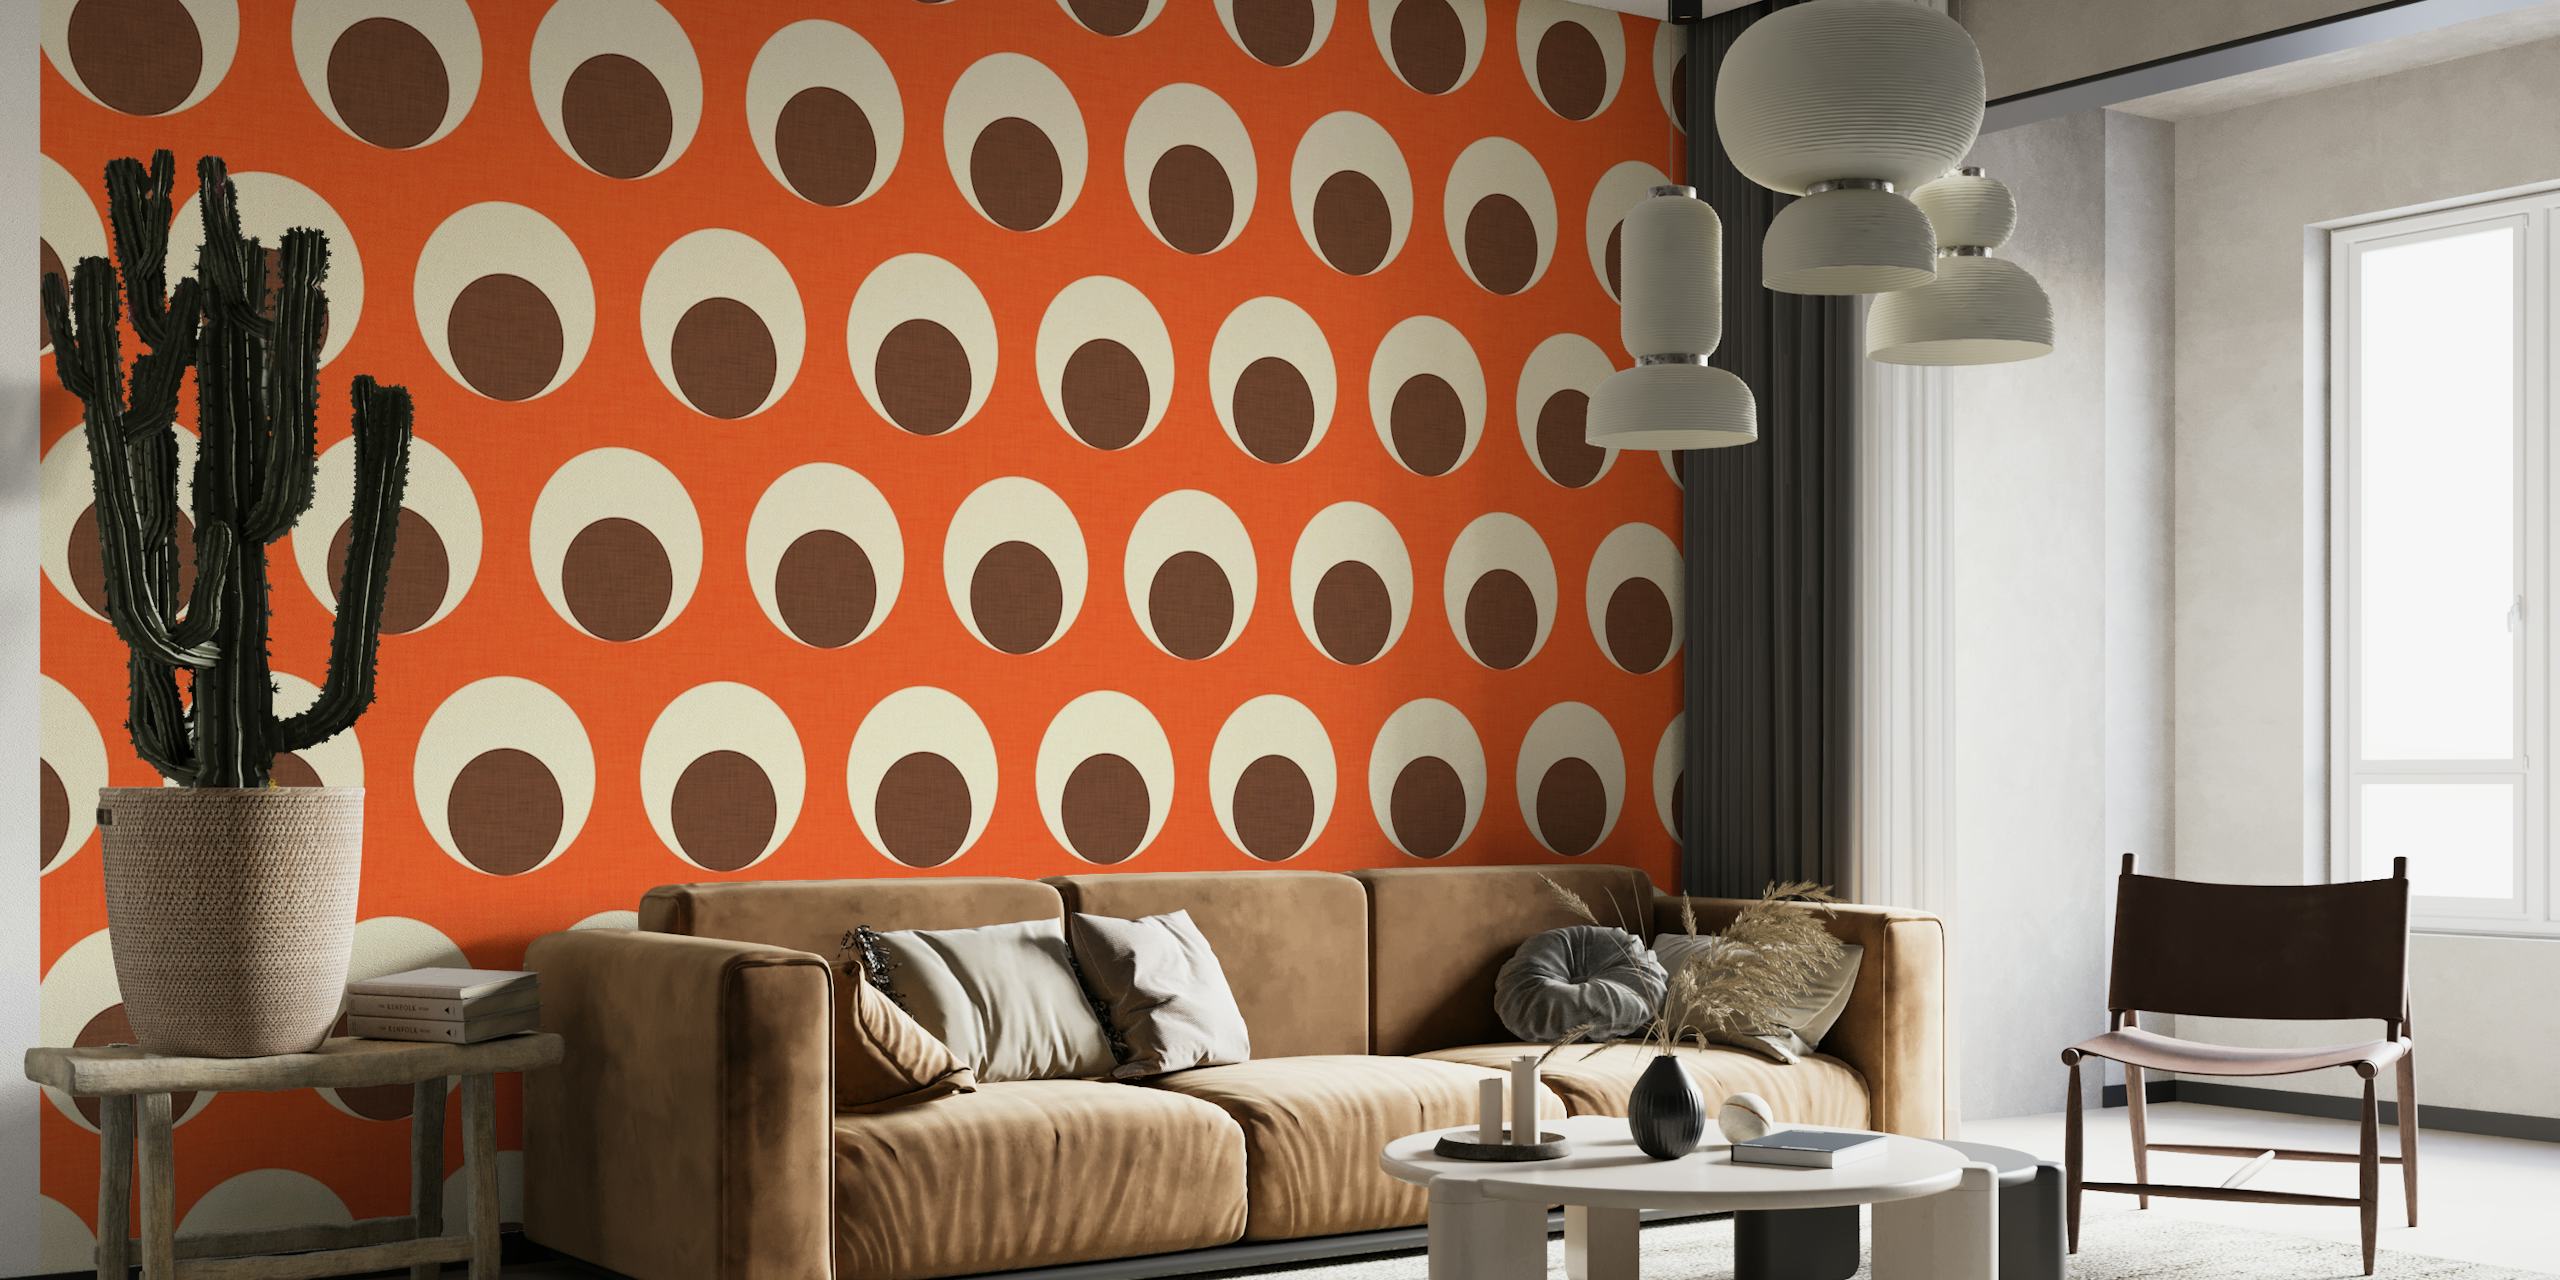 Fotomural con estampado de puntos naranjas y blanquecinos para un diseño interior moderno